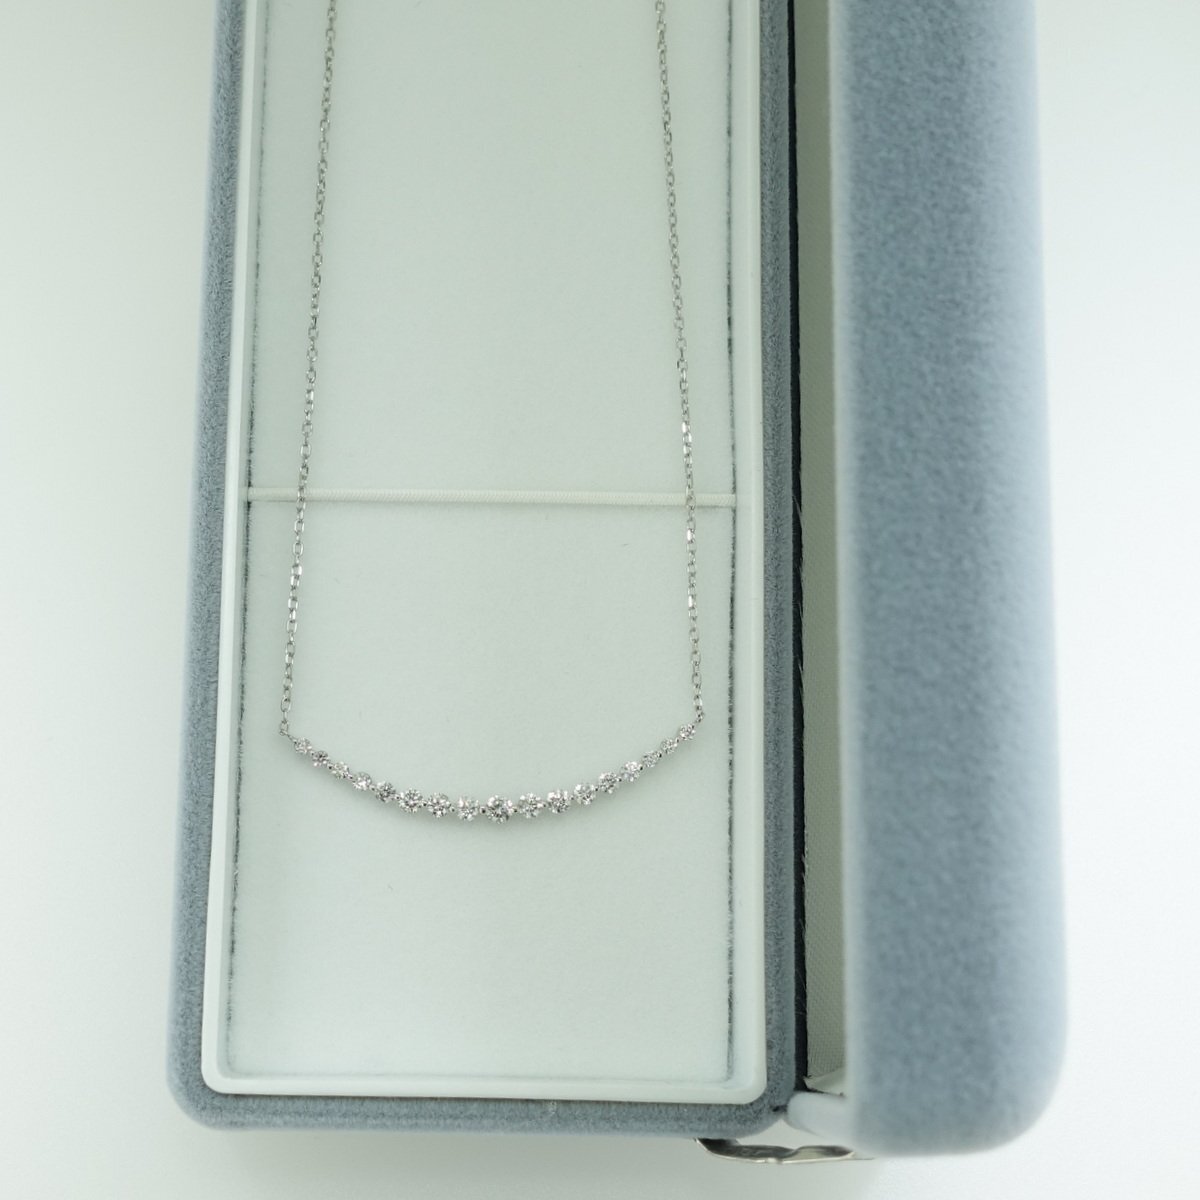 PT 0.50 carat бриллиантовое колье H&C есть различия diamond линия новый товар бесплатная доставка подарок упаковка возможно [ жемчуг Palette ]